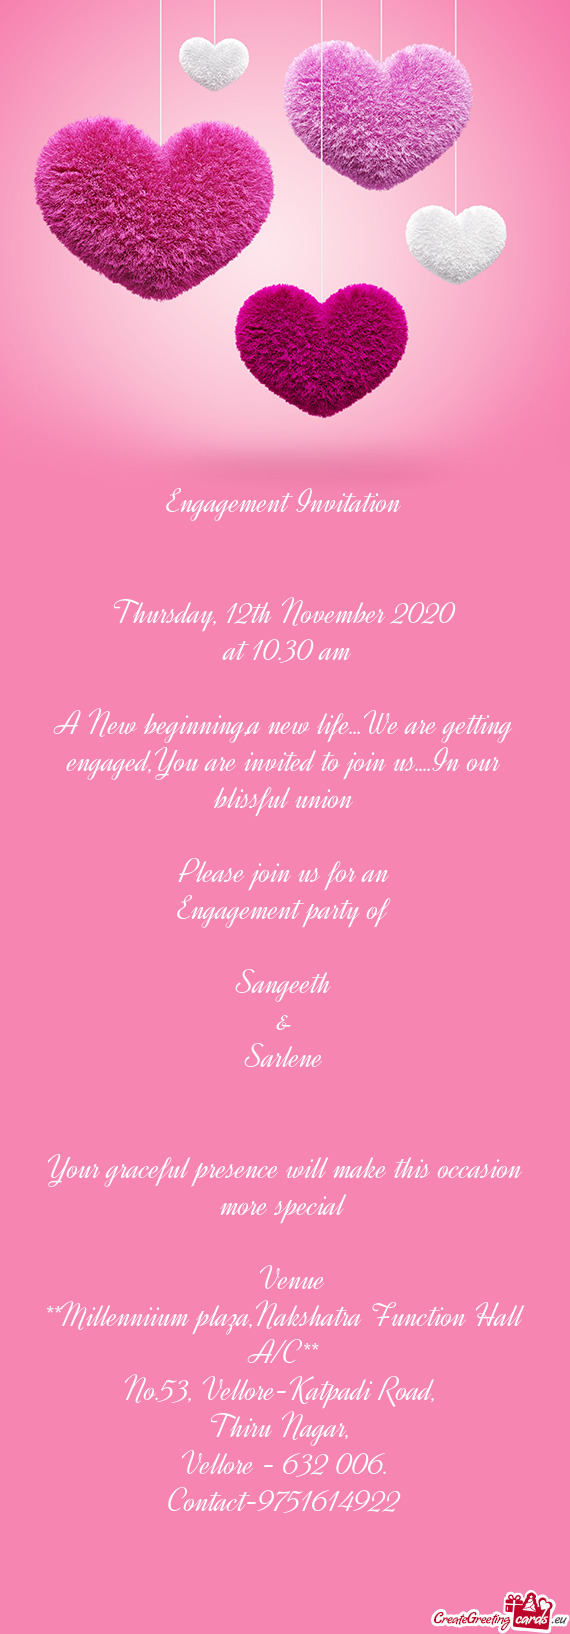 Thursday, 12th November 2020